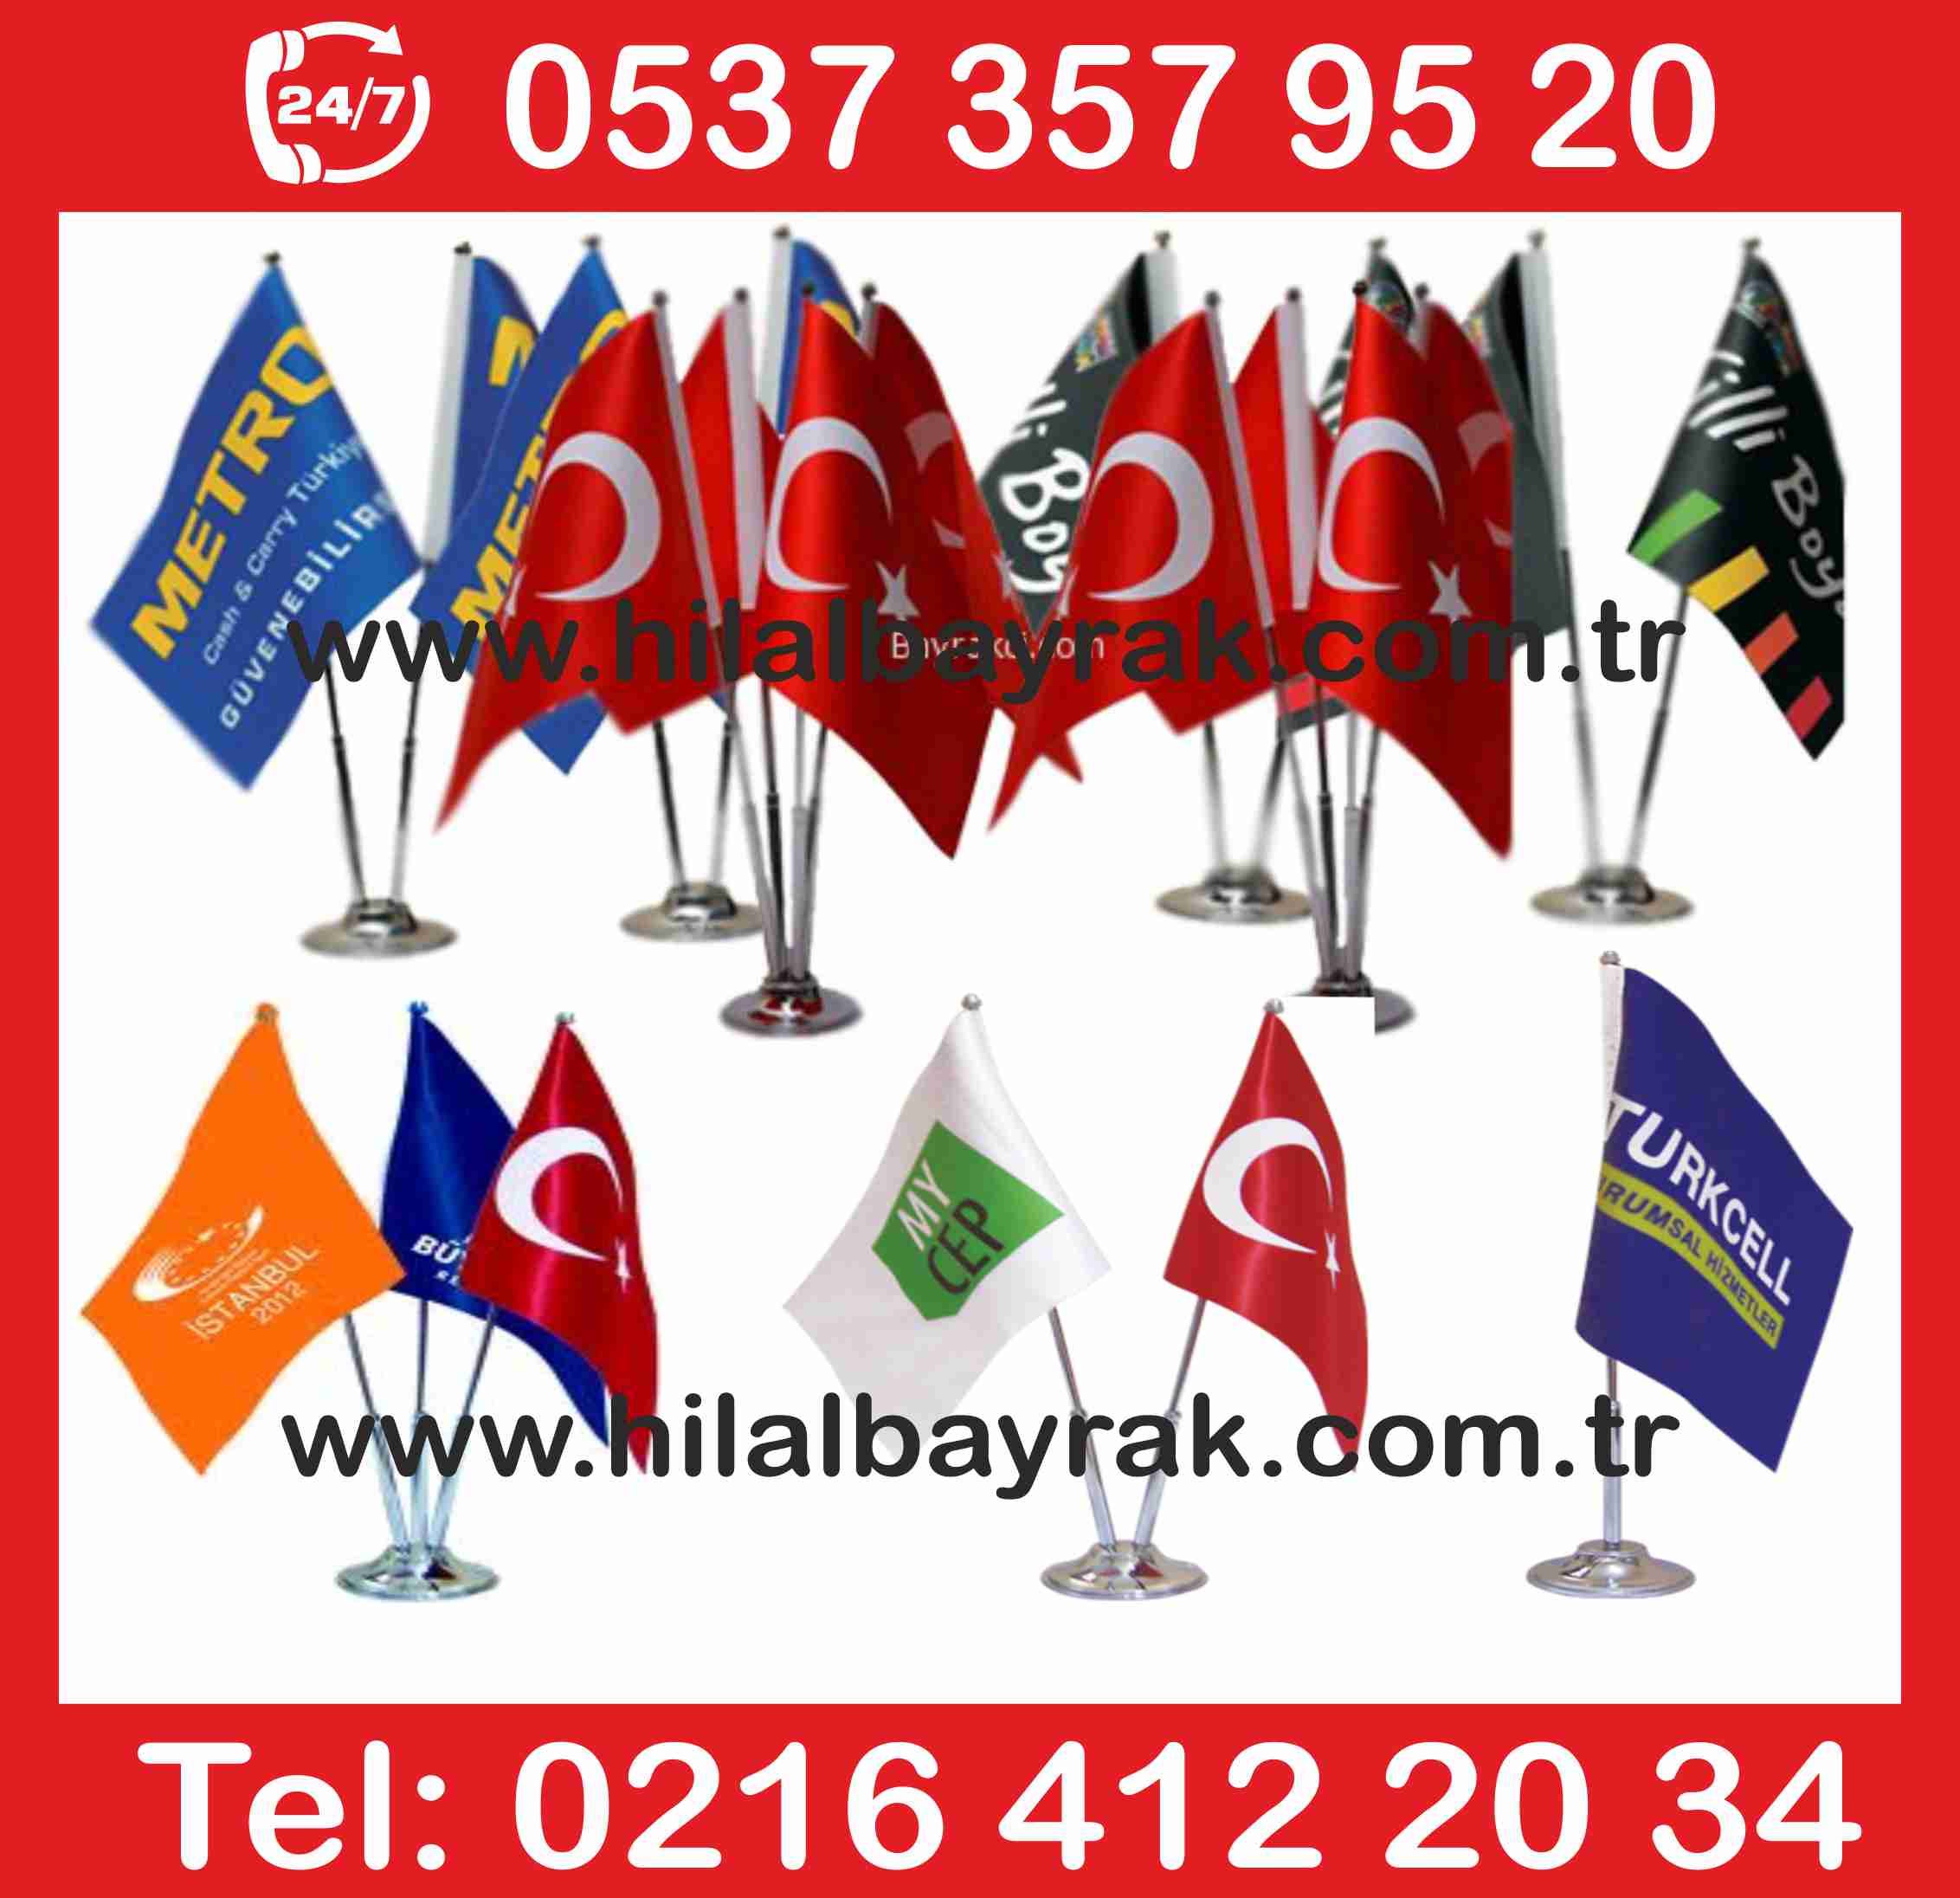 Masa Bayrak Üretimi, Kadıköy İstanbul, masa bayrak, satış, masa bayrak Ümraniye, masa bayrak imalatı, acil masa bayrağı, masa bayrakları, masa bayrak burada satışı 7.24 SAAT AÇIK HİZMET